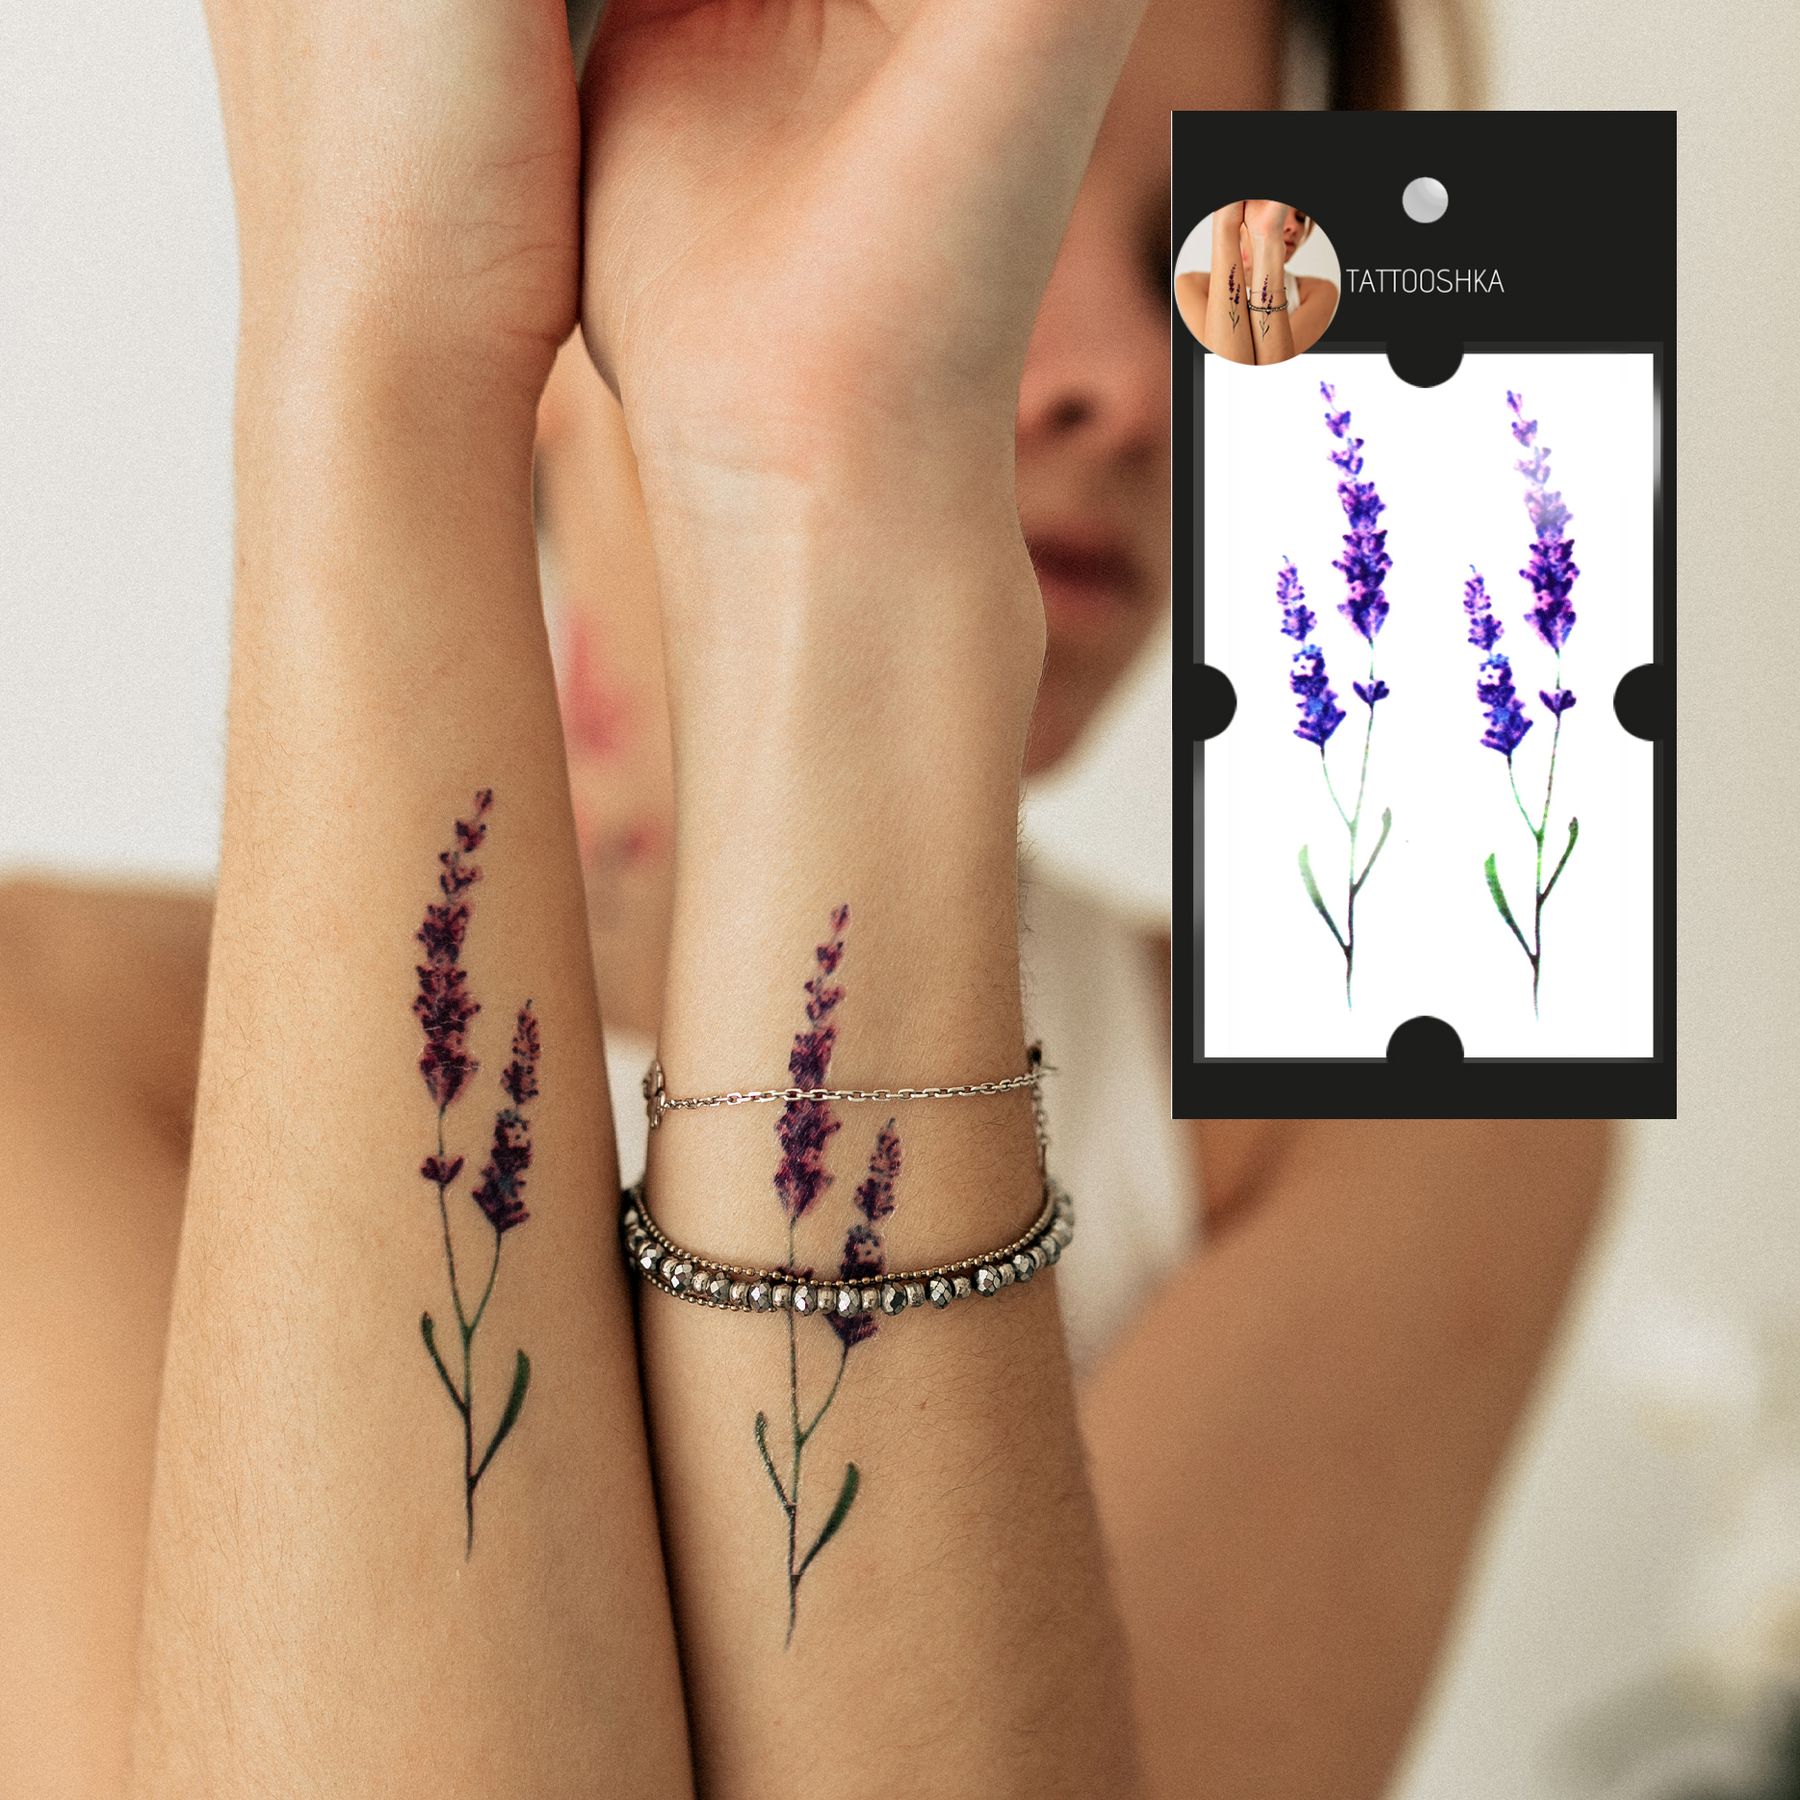 Тату с лавандой: эскизы, фото и идеи татуировок цветов лаванды для женщин и мужчин